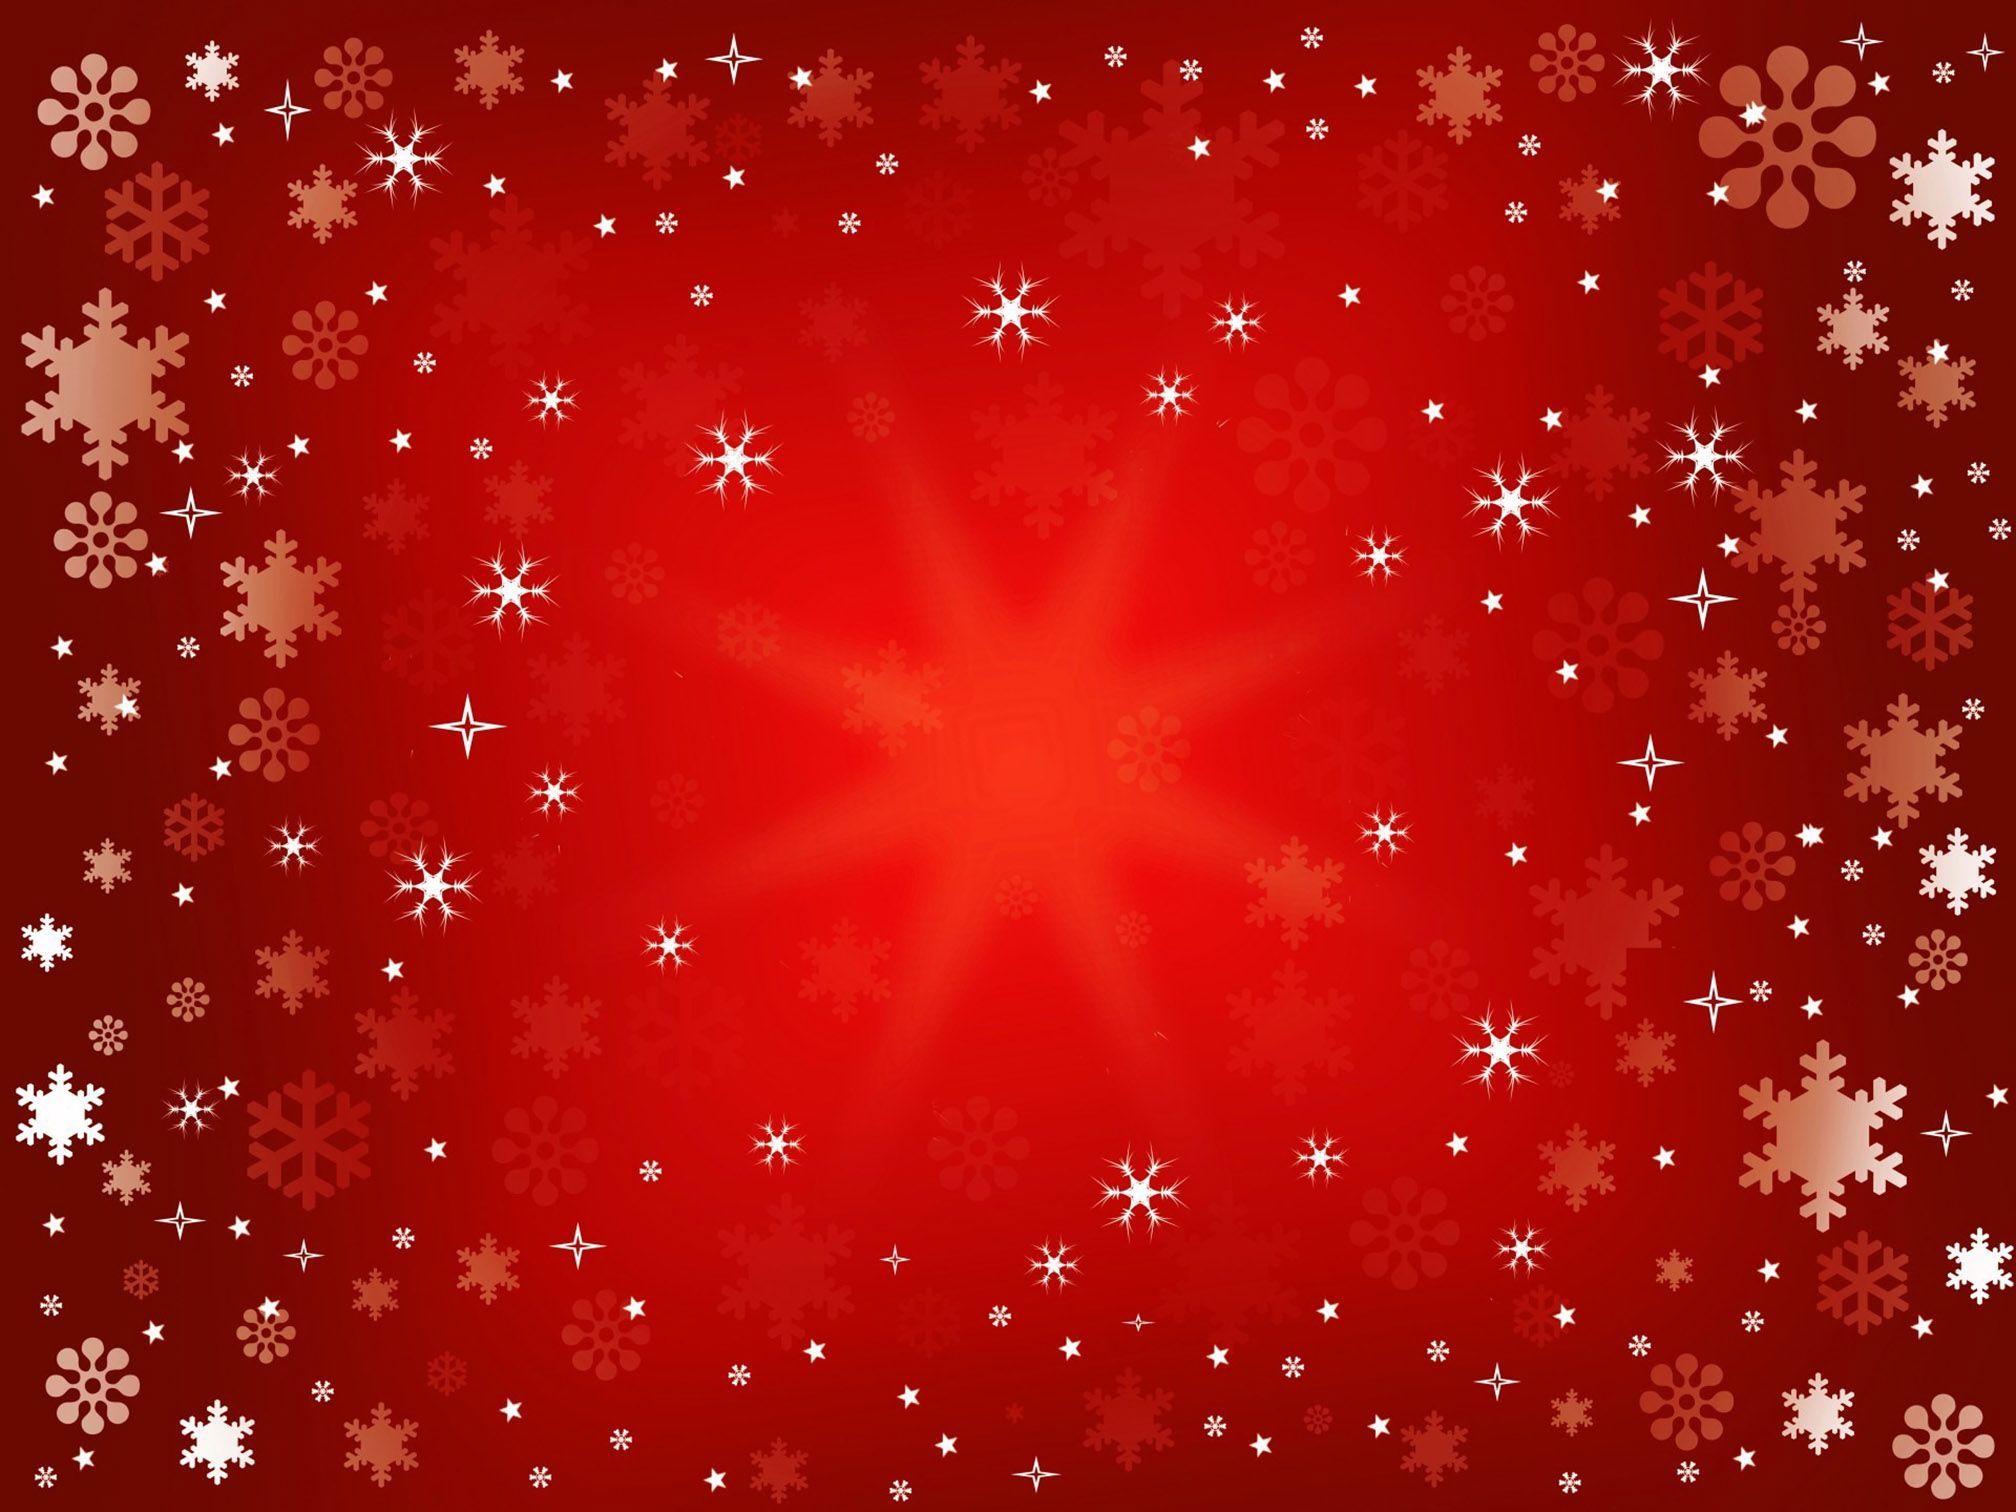 Red Christmas Wallpapers - Top Những Hình Ảnh Đẹp